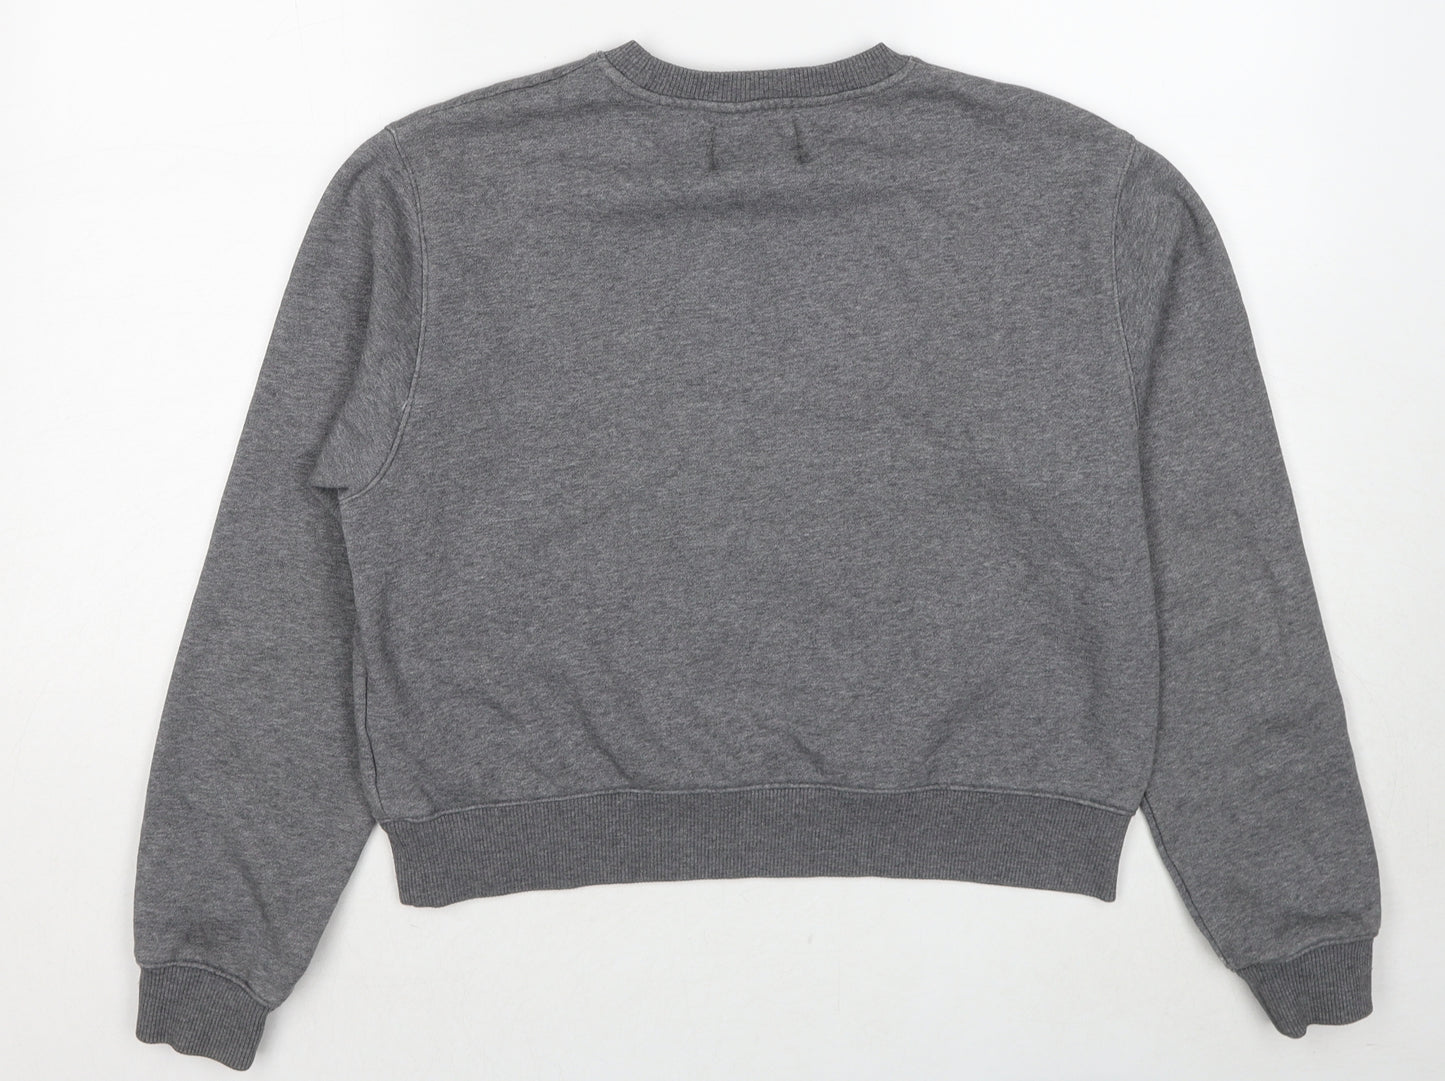 Calvin Klein Womens Grey Cotton Pullover Sweatshirt Size S Pullover